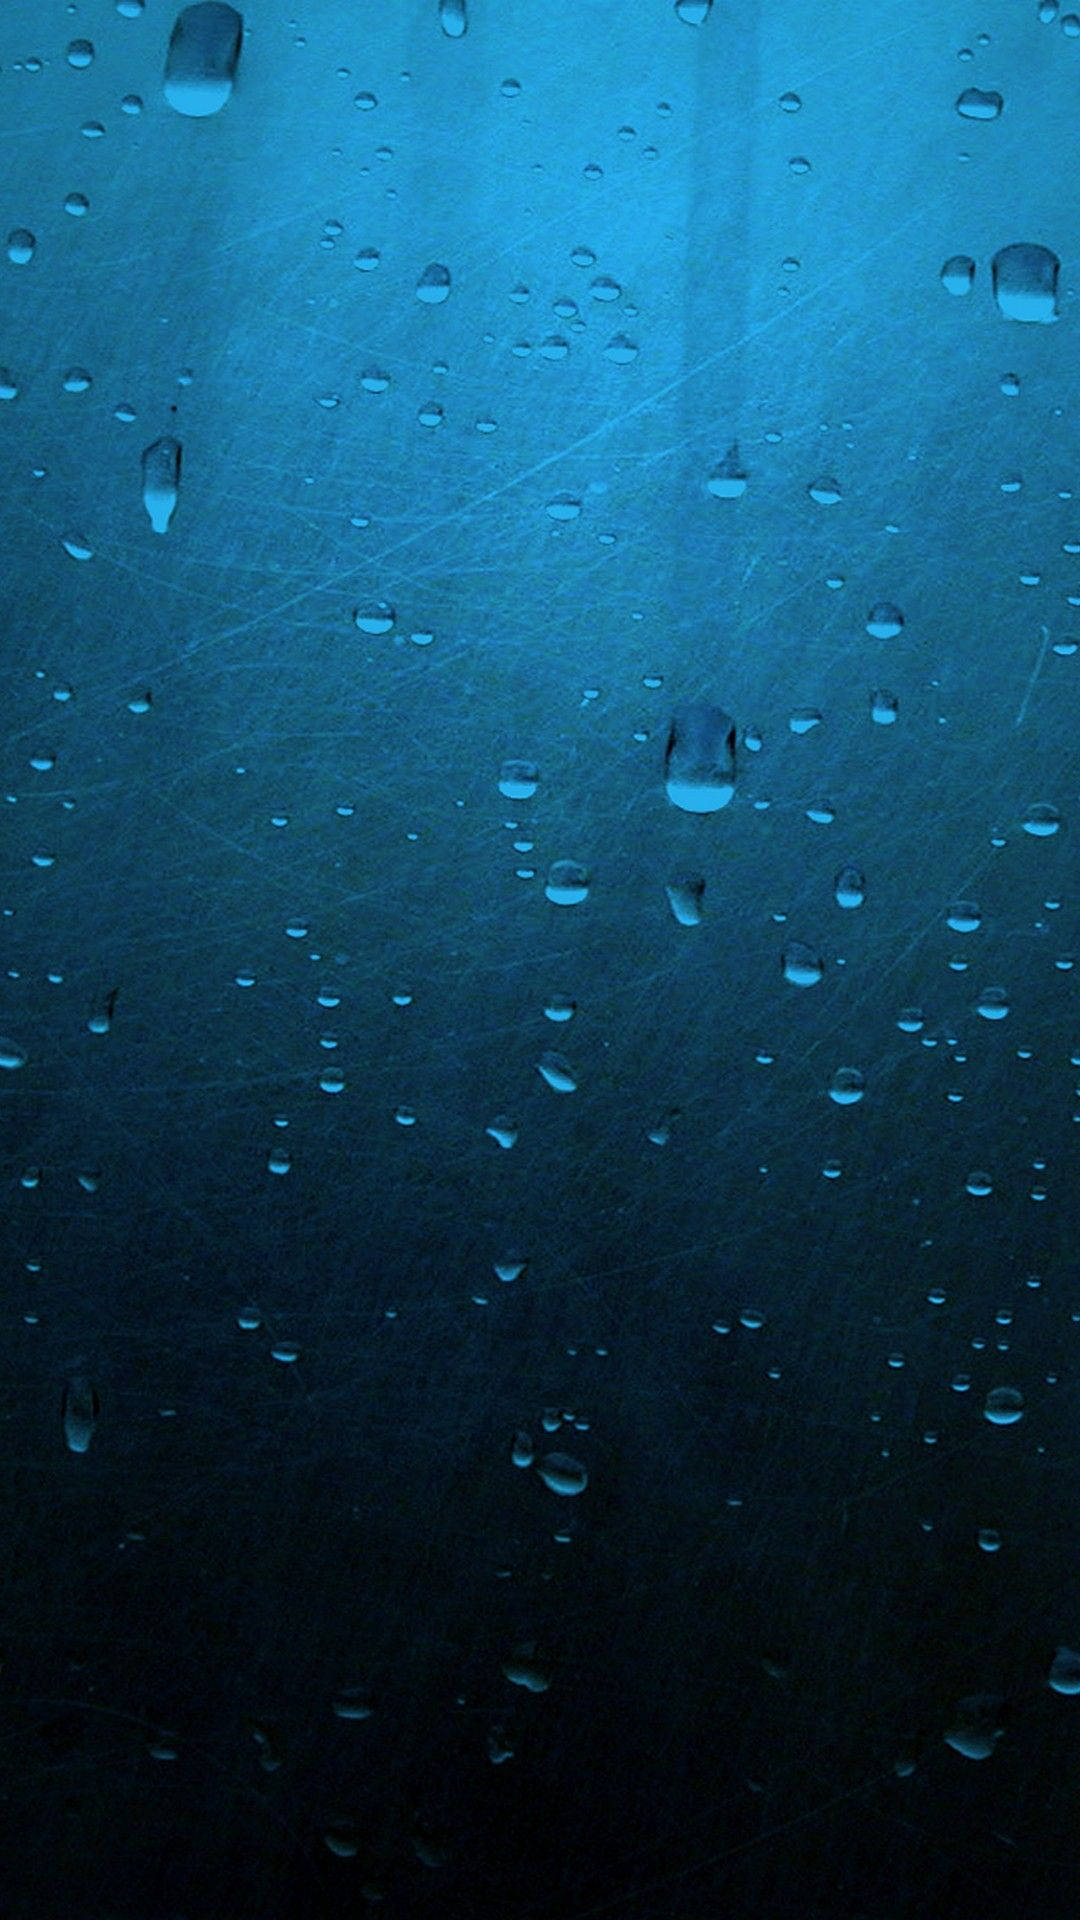 Raindrops Iphone Live Wallpaper